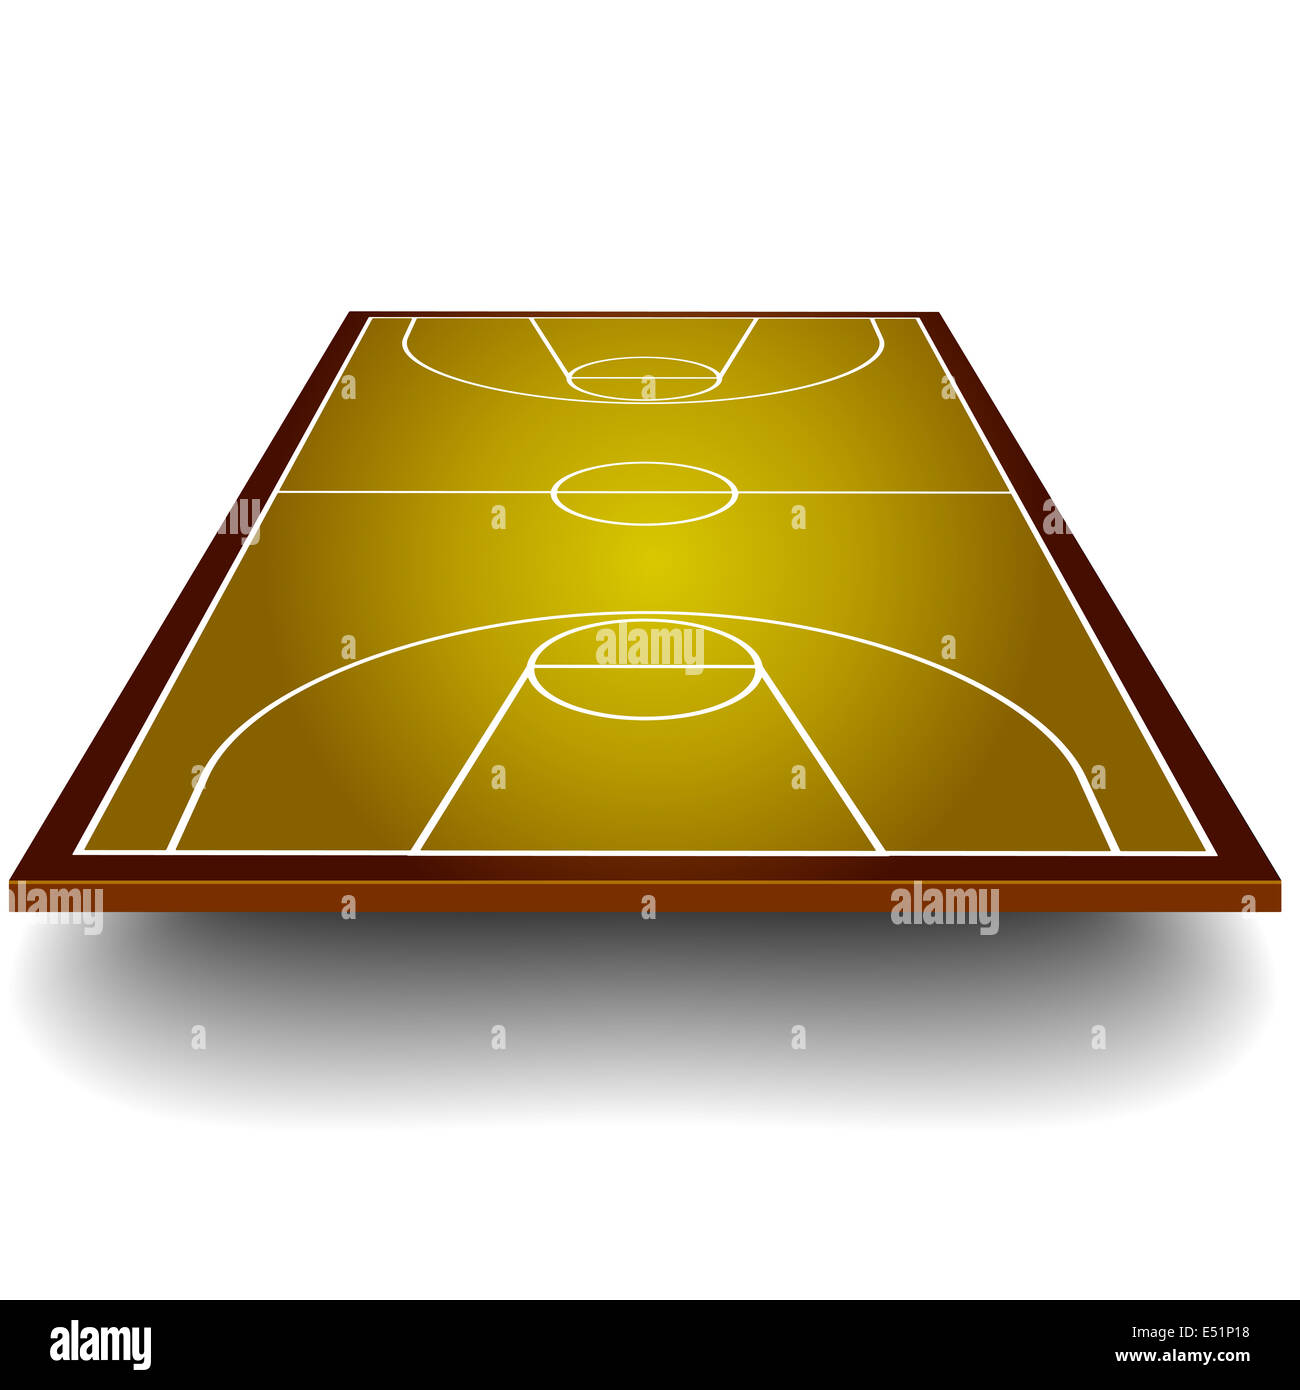 Basketballfeld mit Perspektive Stockfoto